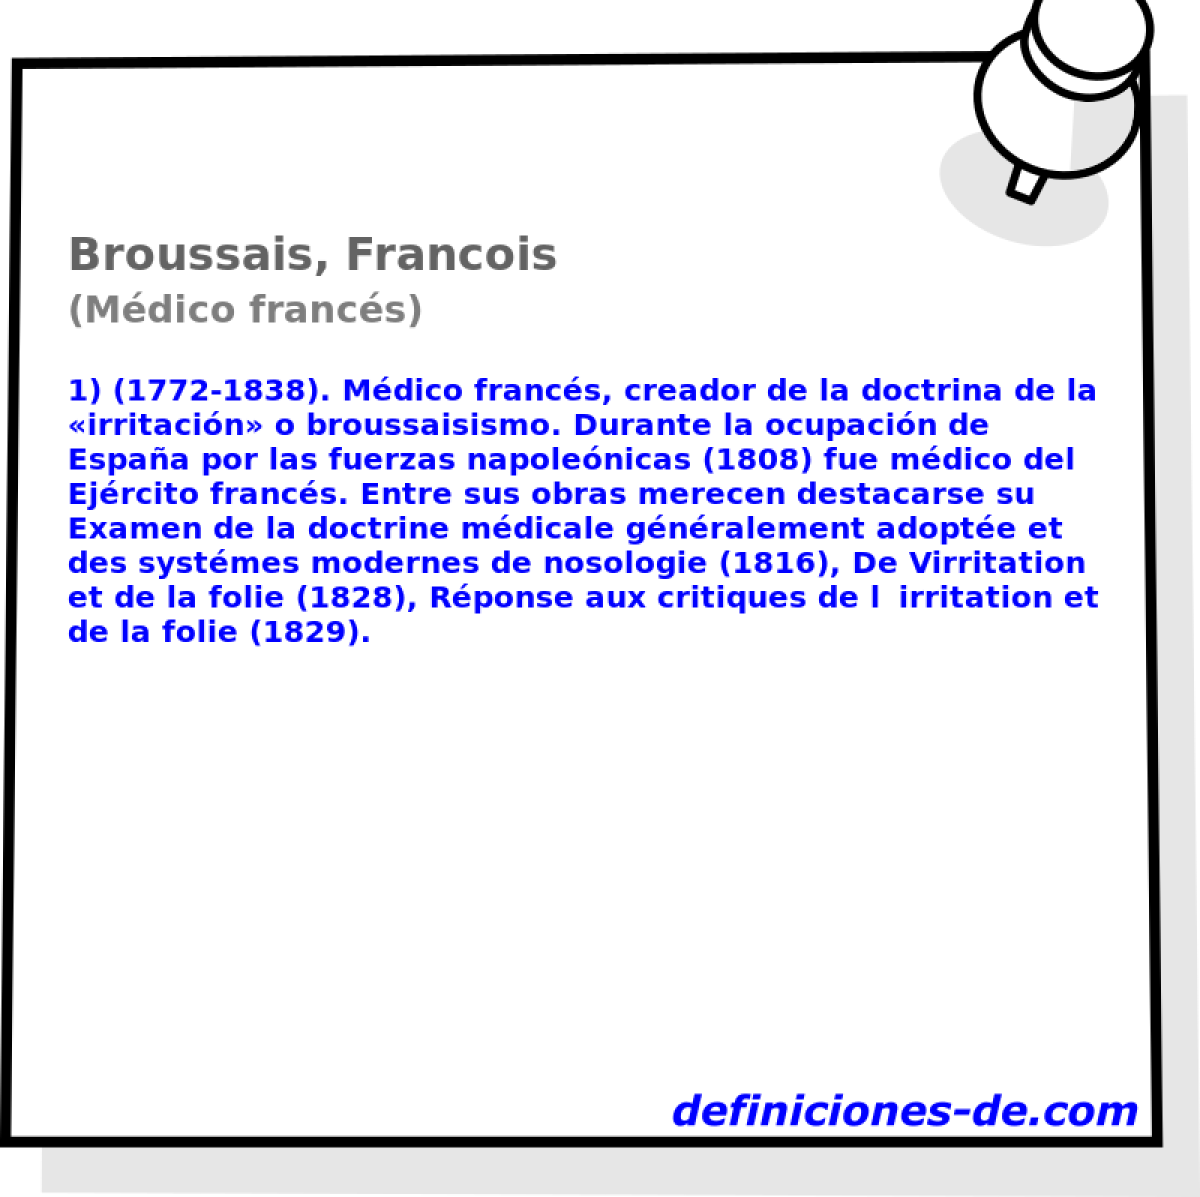 Broussais, Francois (Mdico francs)